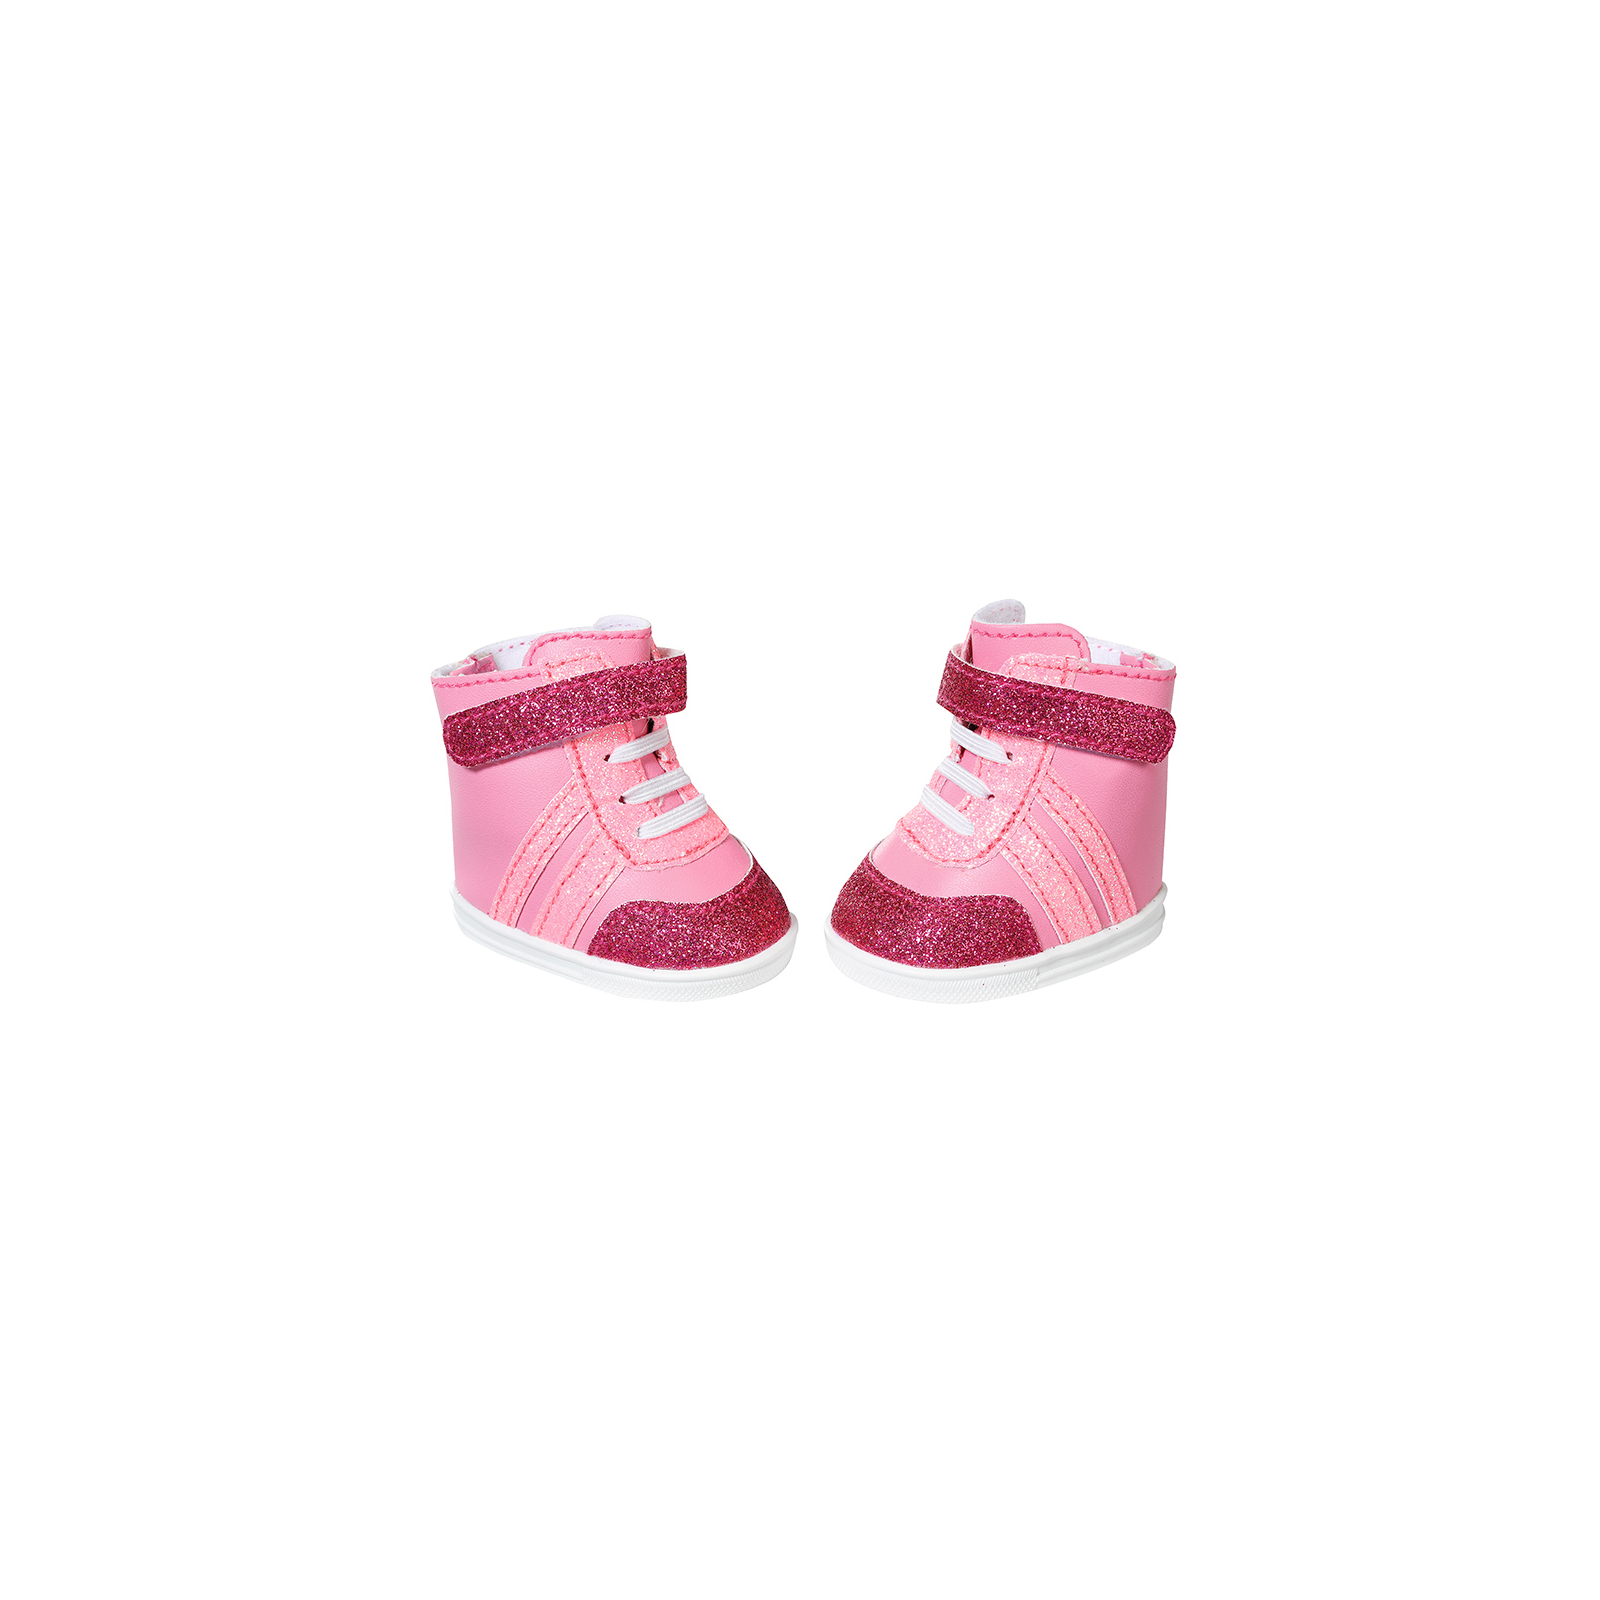 Аксессуар к кукле Zapf Обувь для куклы Baby Born - Розовые кеды (833889) изображение 2